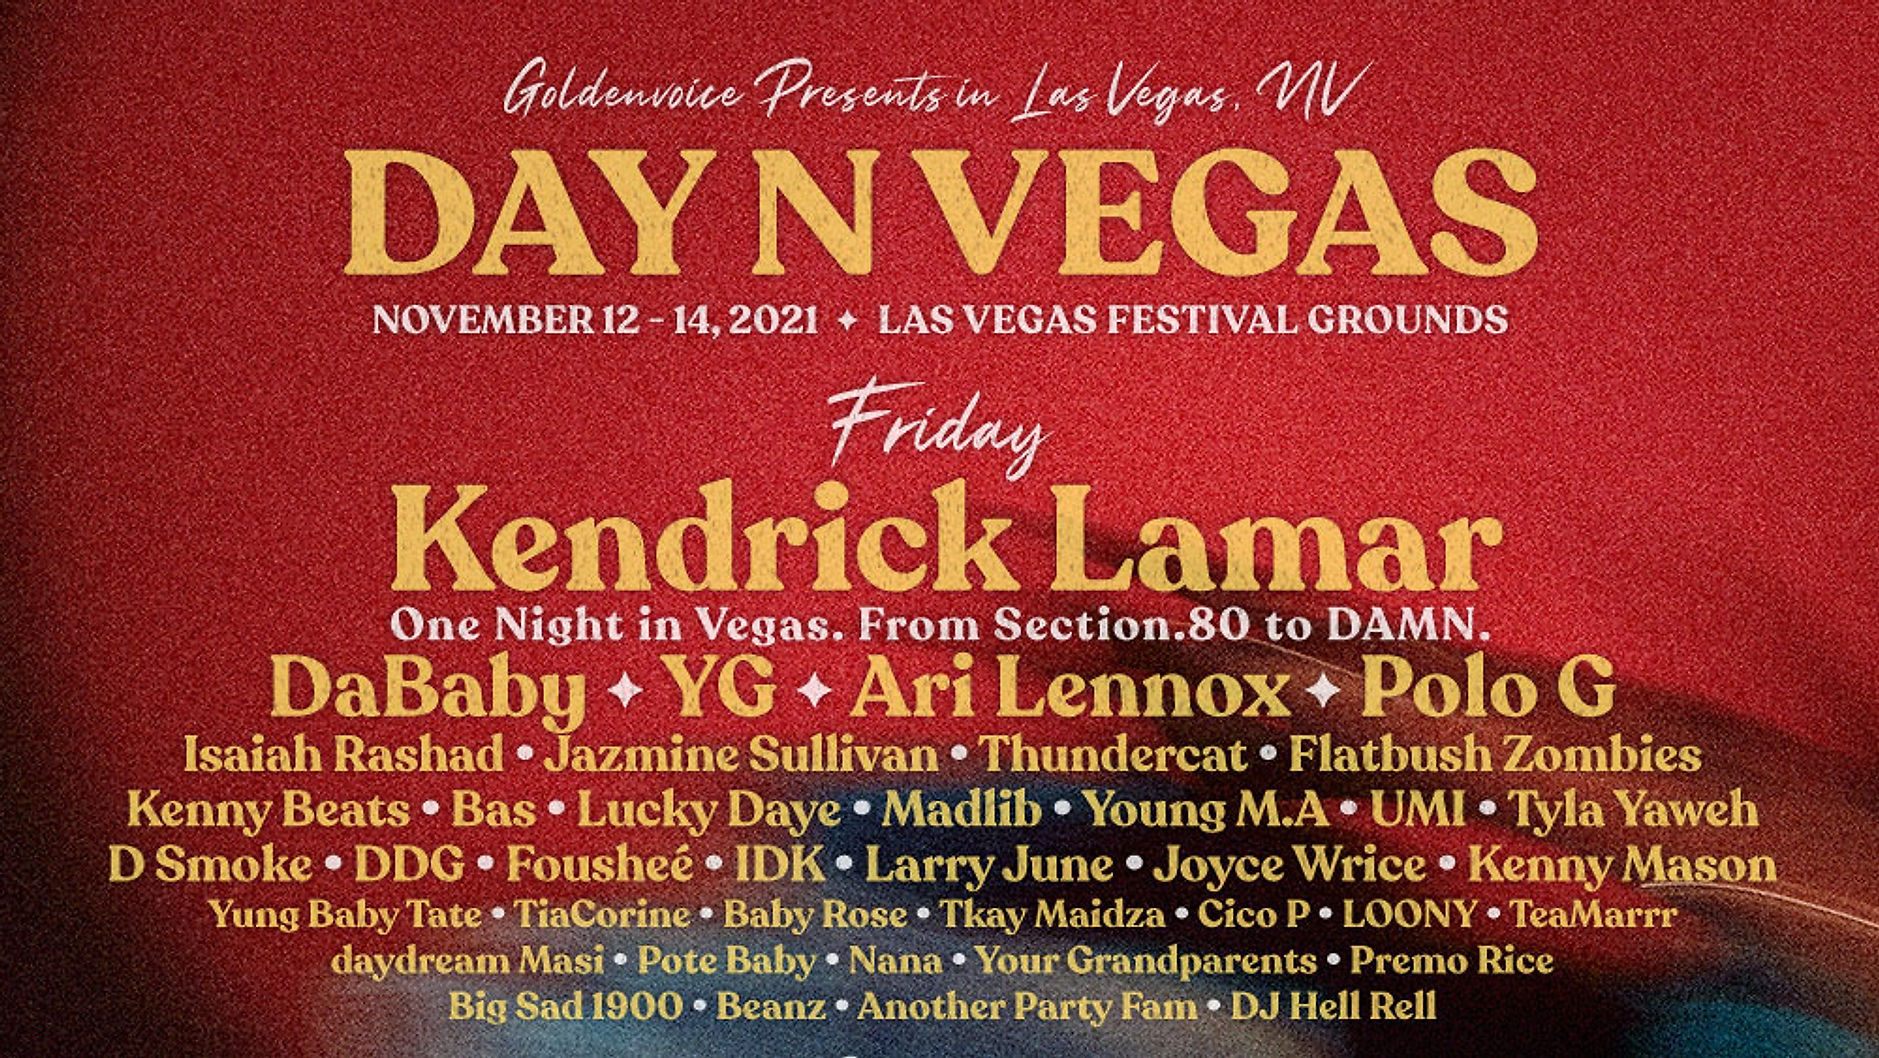 Kendrick Lamar Returns to Day N Vegas